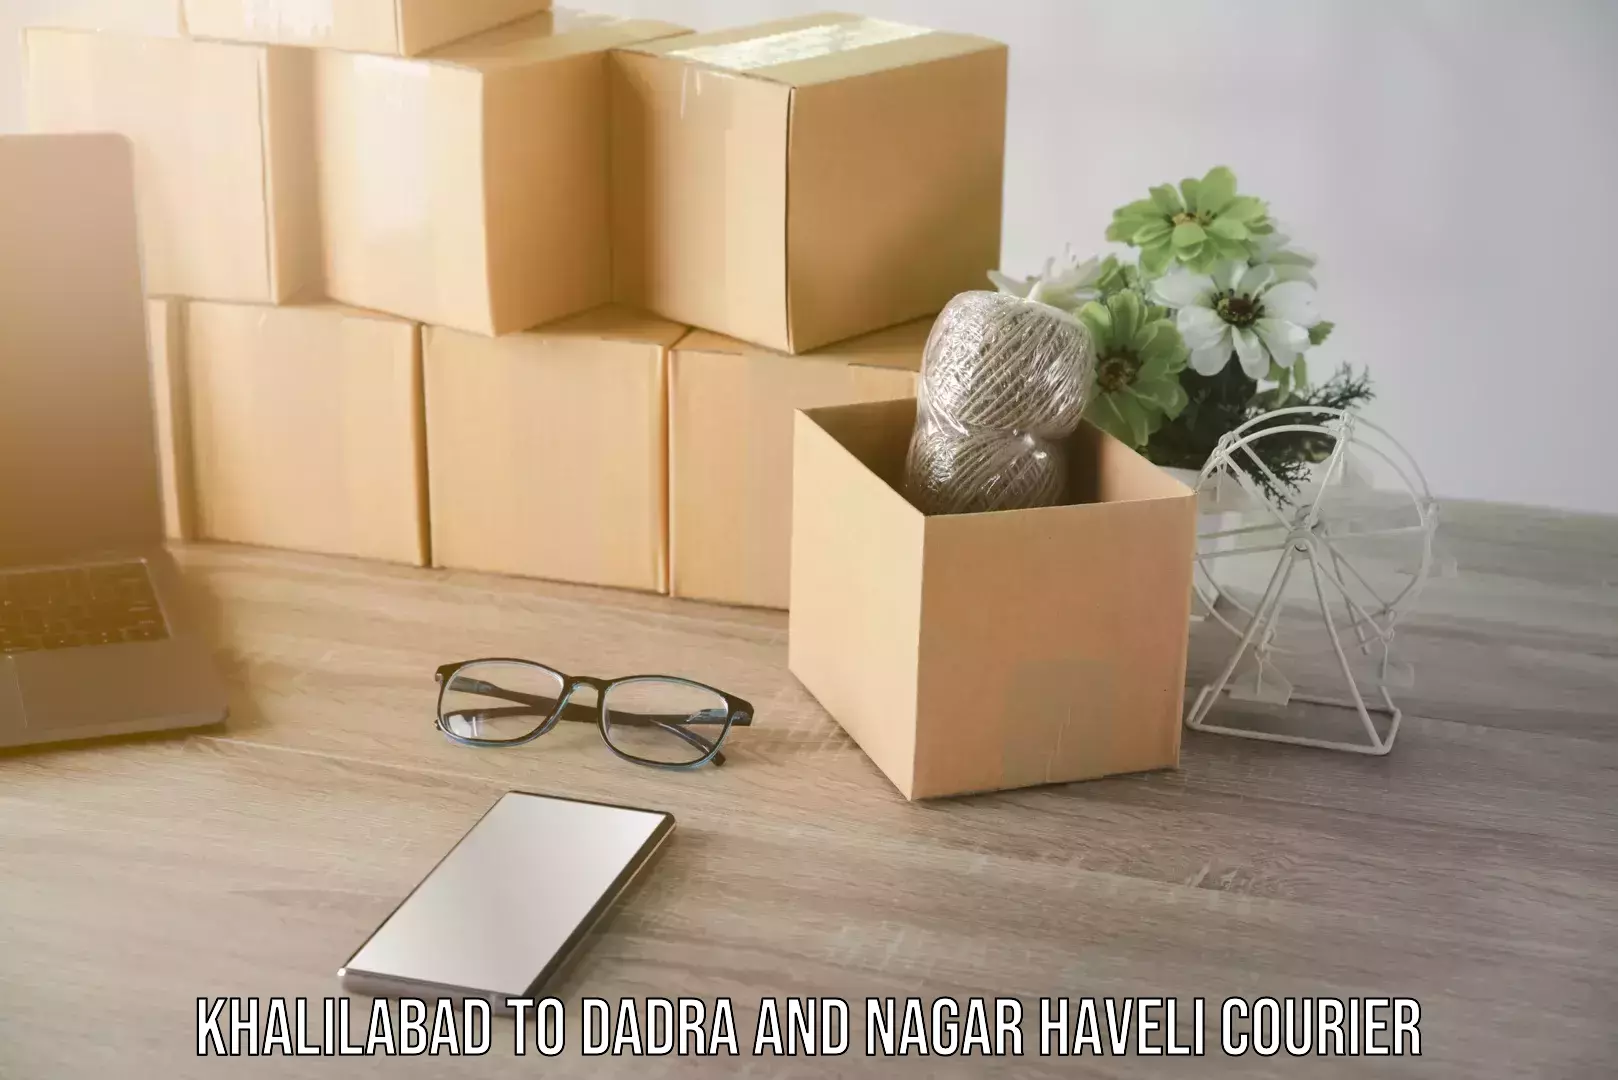 Skilled furniture movers Khalilabad to Dadra and Nagar Haveli